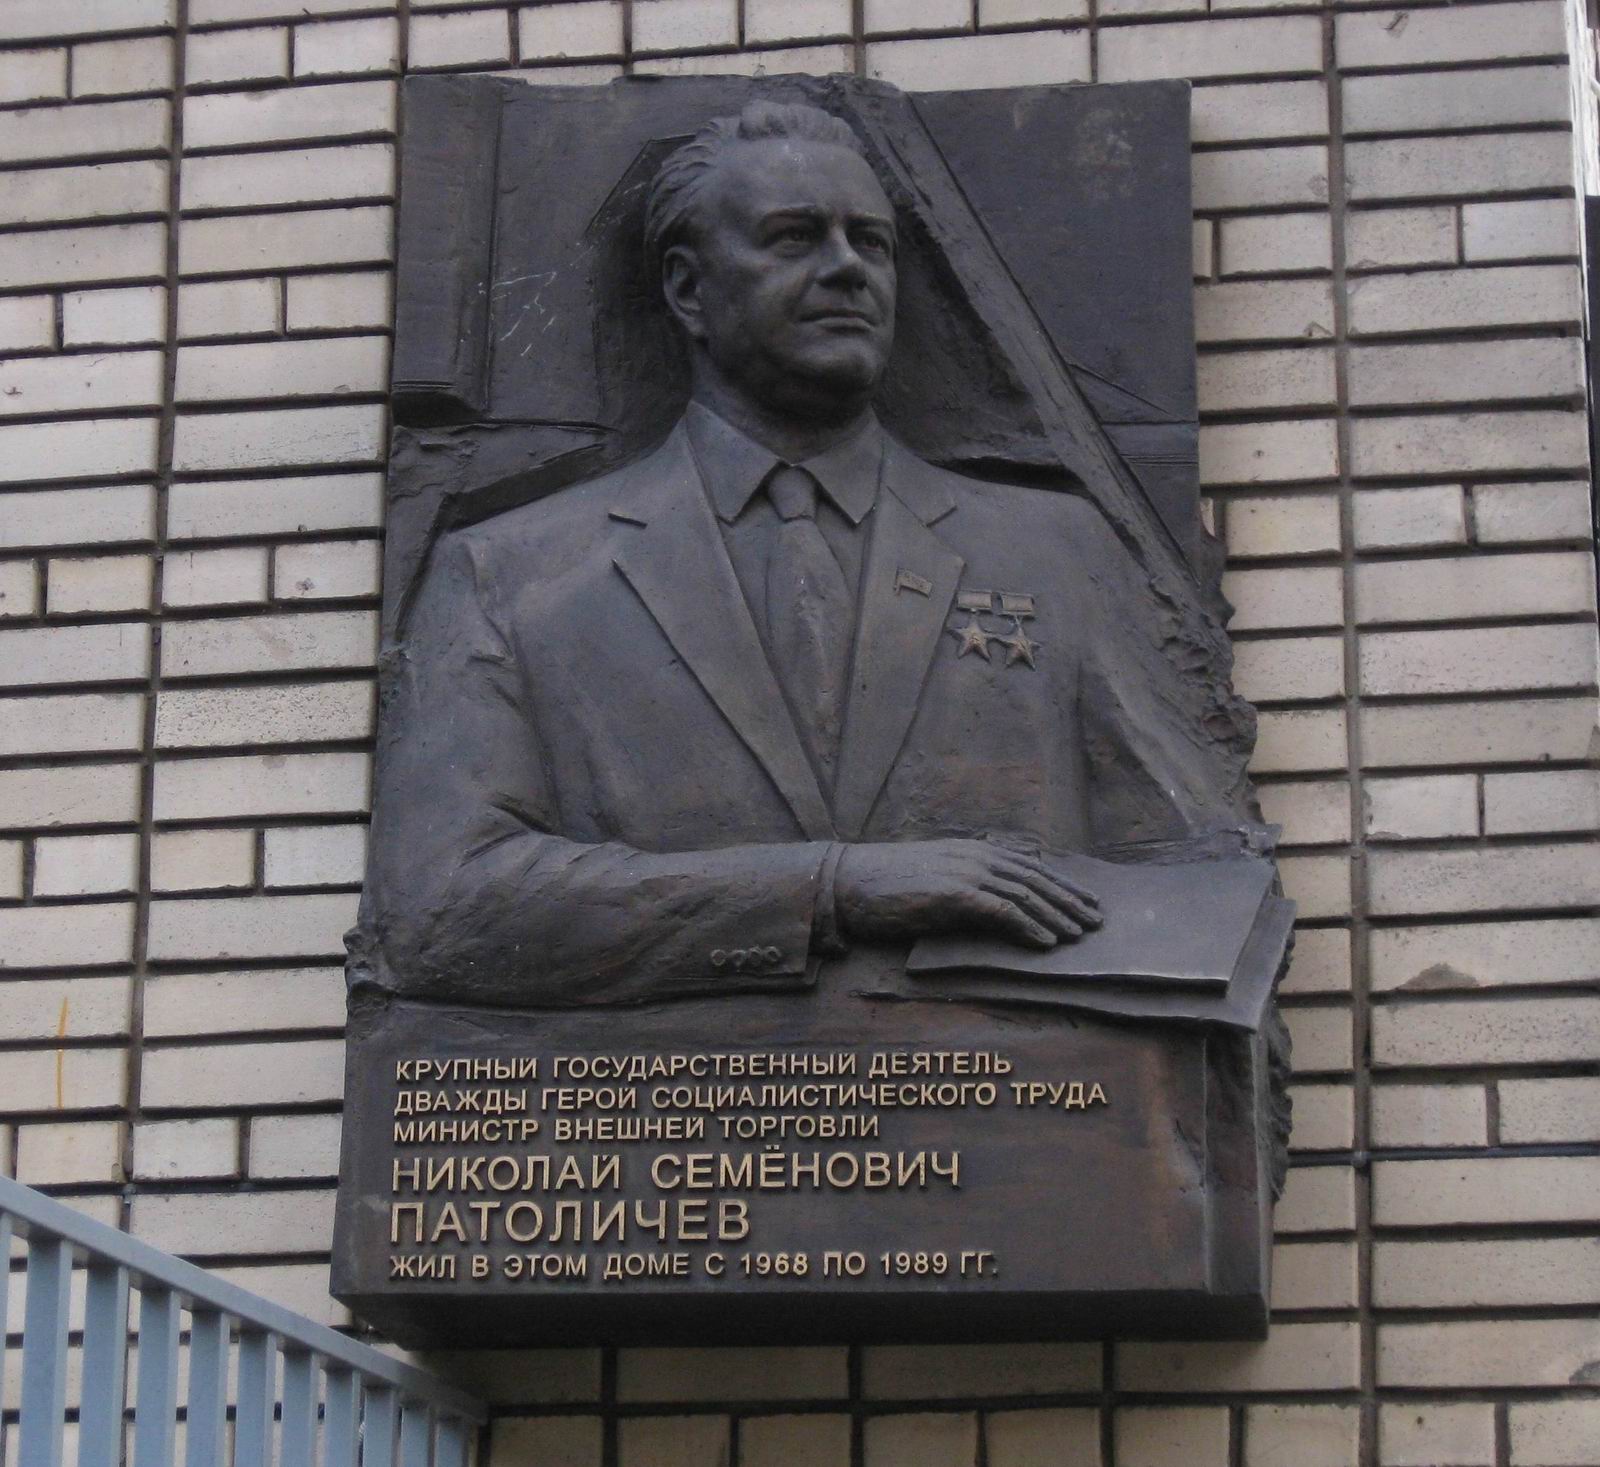 Мемориальная доска Патоличеву Н.С. (1908-1989), на улице Спиридоновка, дом 18, открыта в декабре 2008.